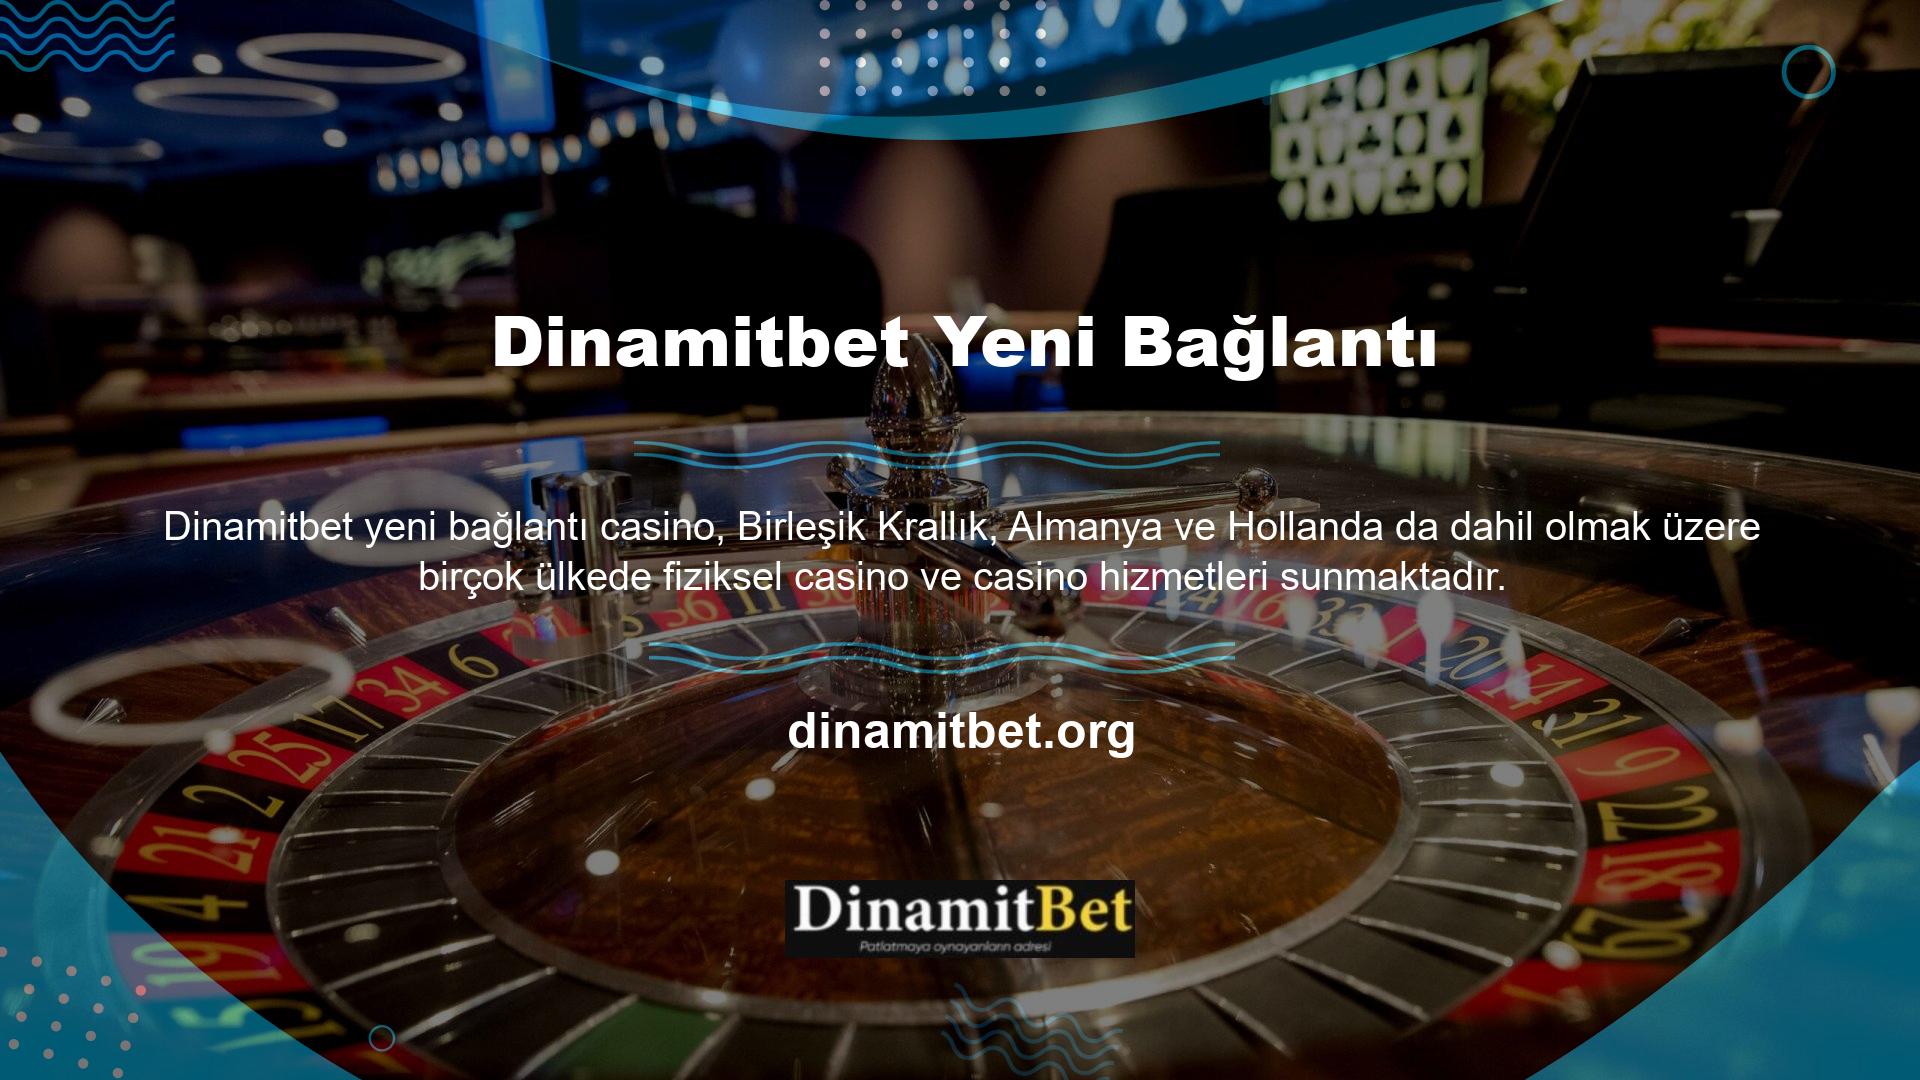 Amerika'da ise Dinamitbet adı altında Türk oyunculara hizmet vermektedir